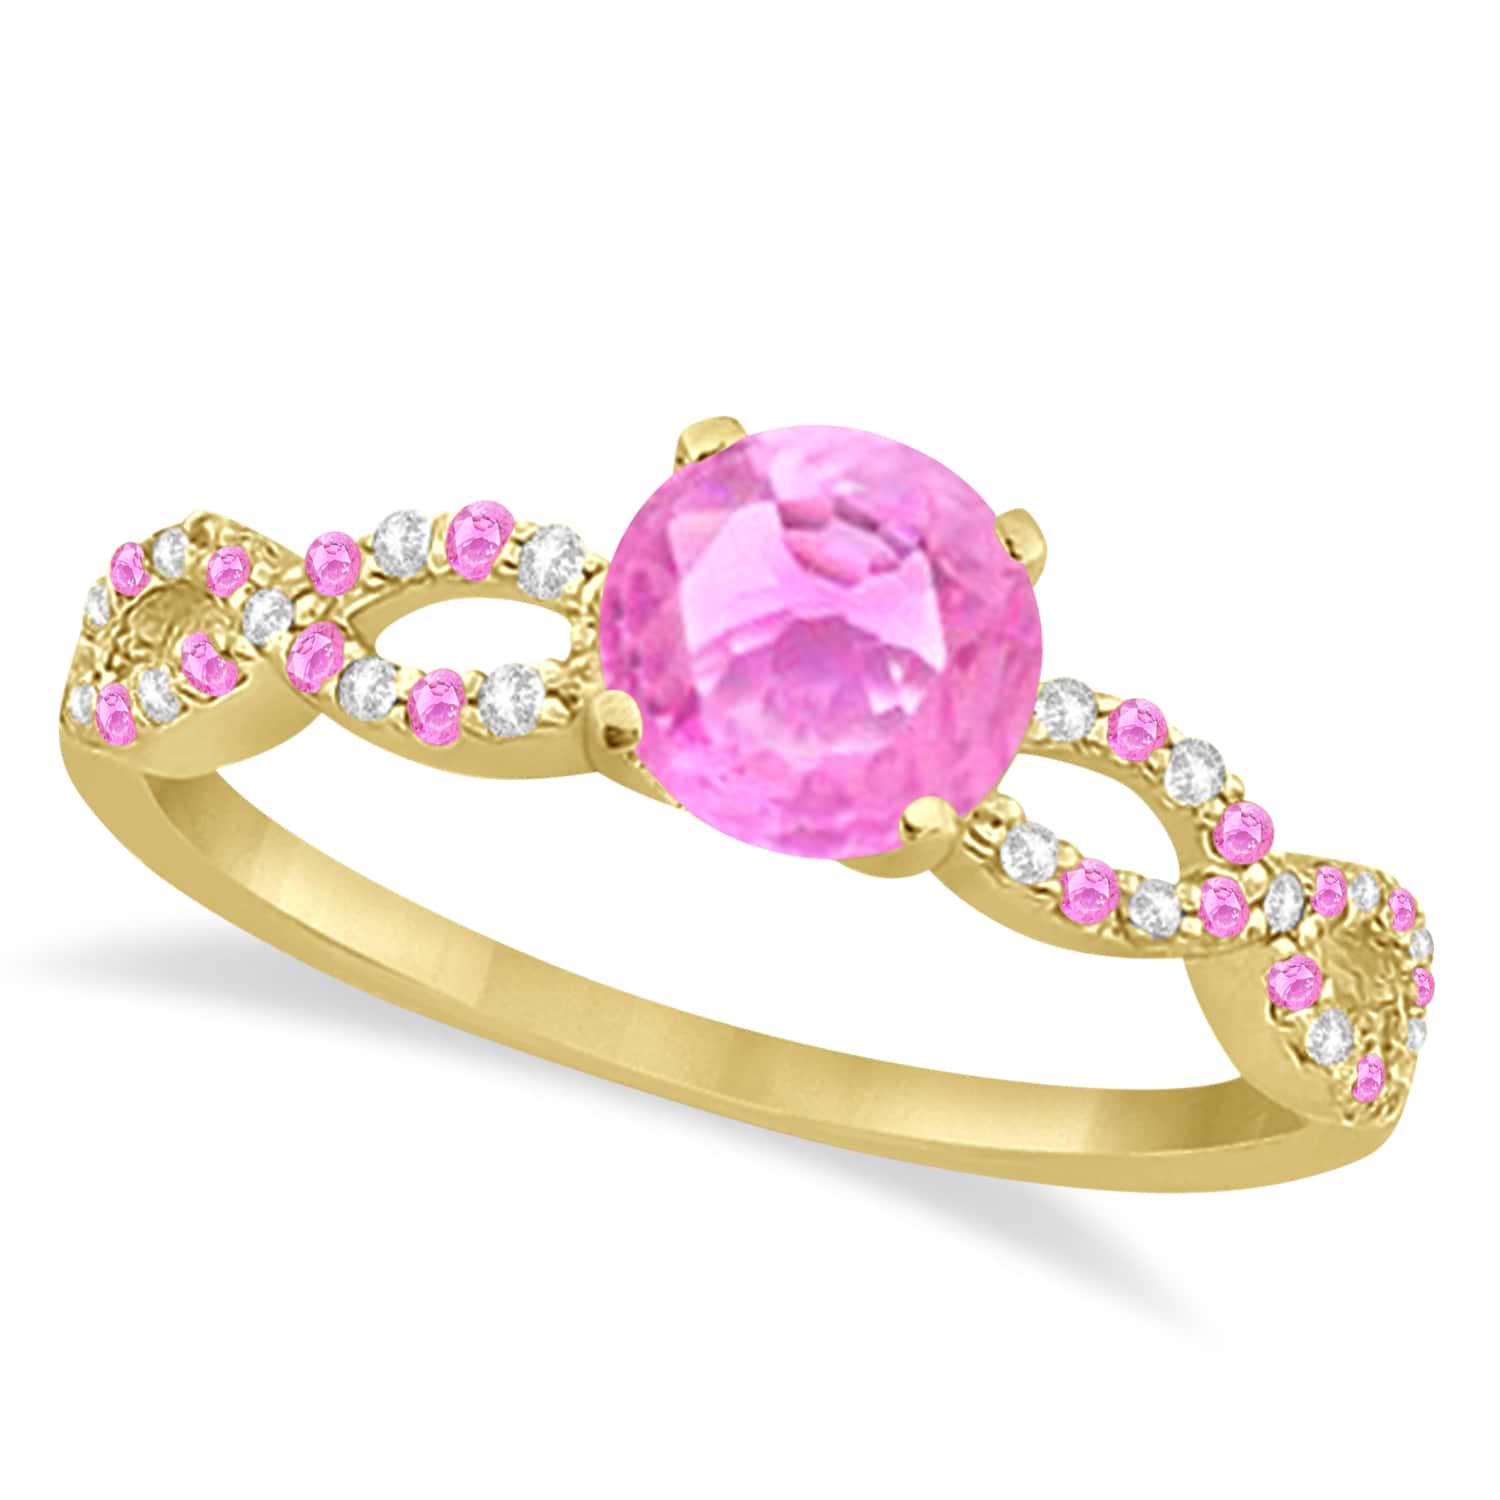 Diamond & Pink Sapphire Infinity Style Bridal Set 14k Yellow Gold 2.24ct